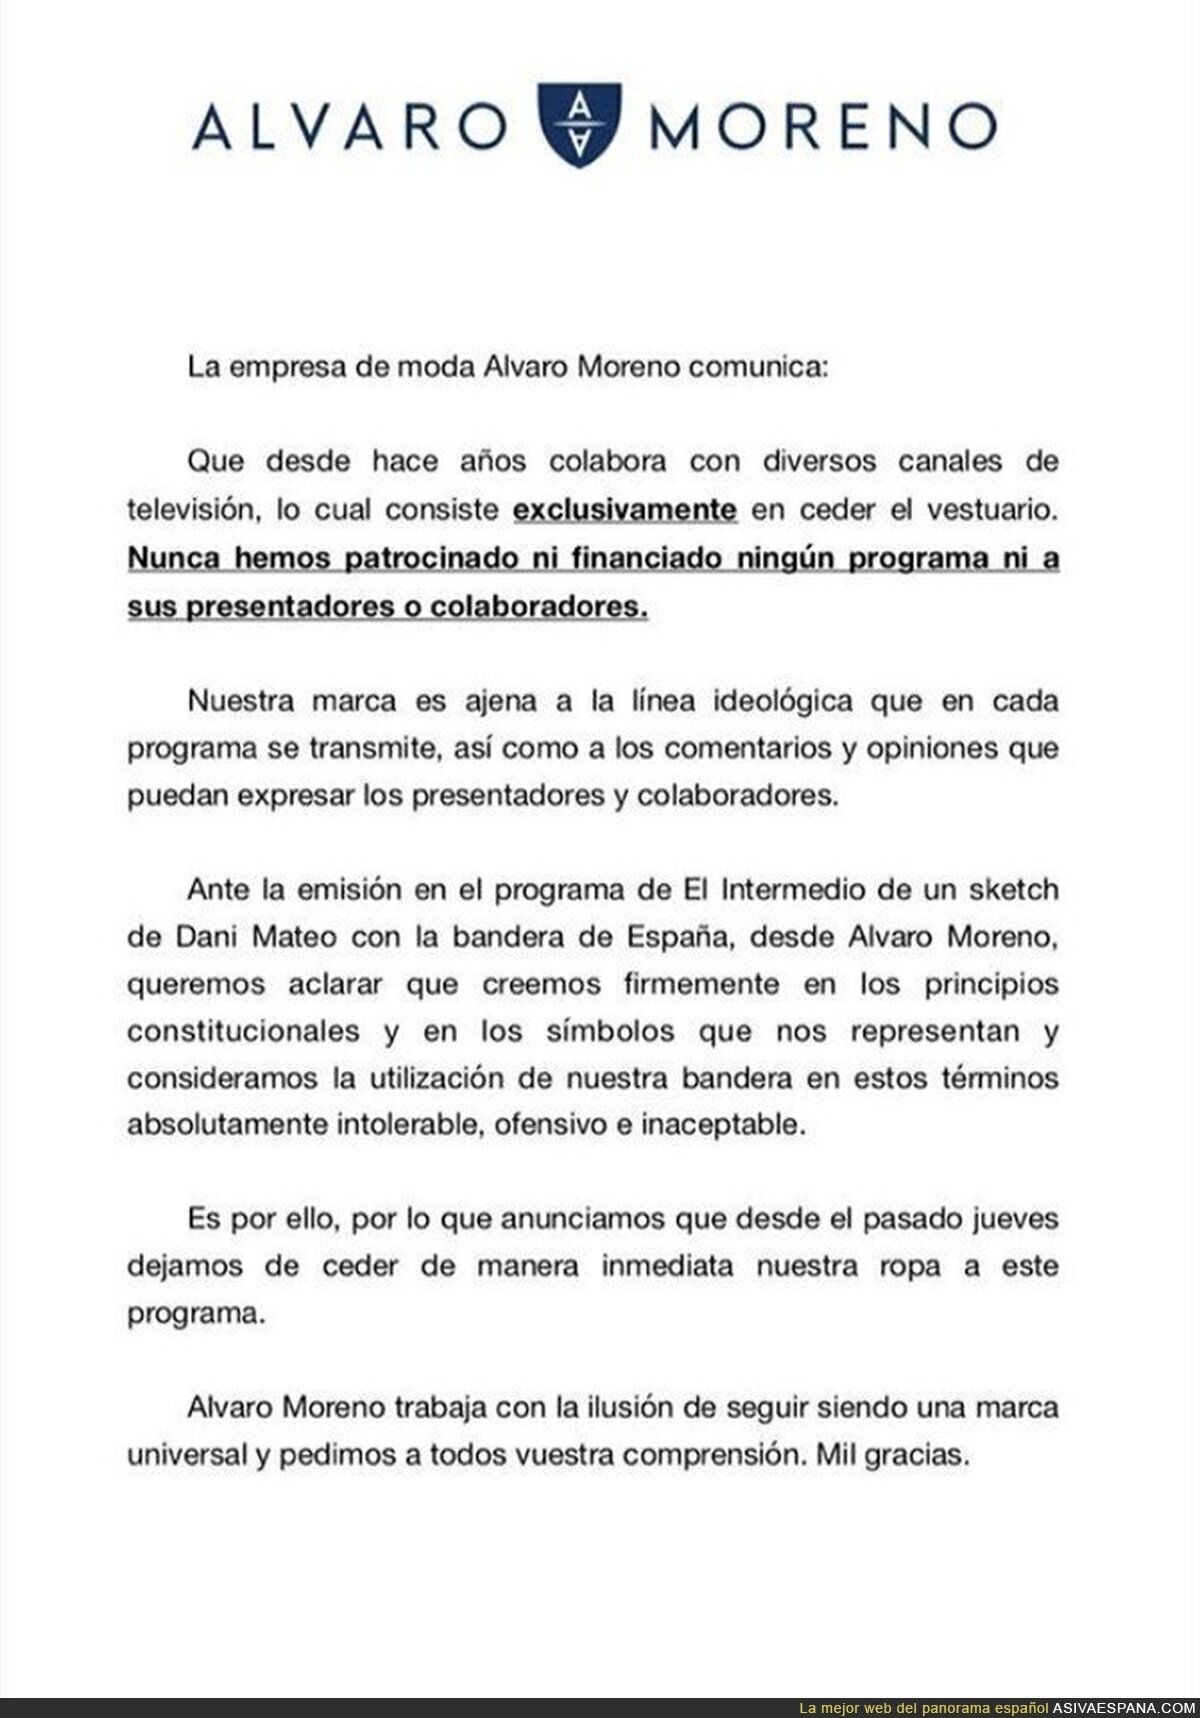 "Alvaro Moreno", otra empresa que deja de apoyar a "El Intermedio"